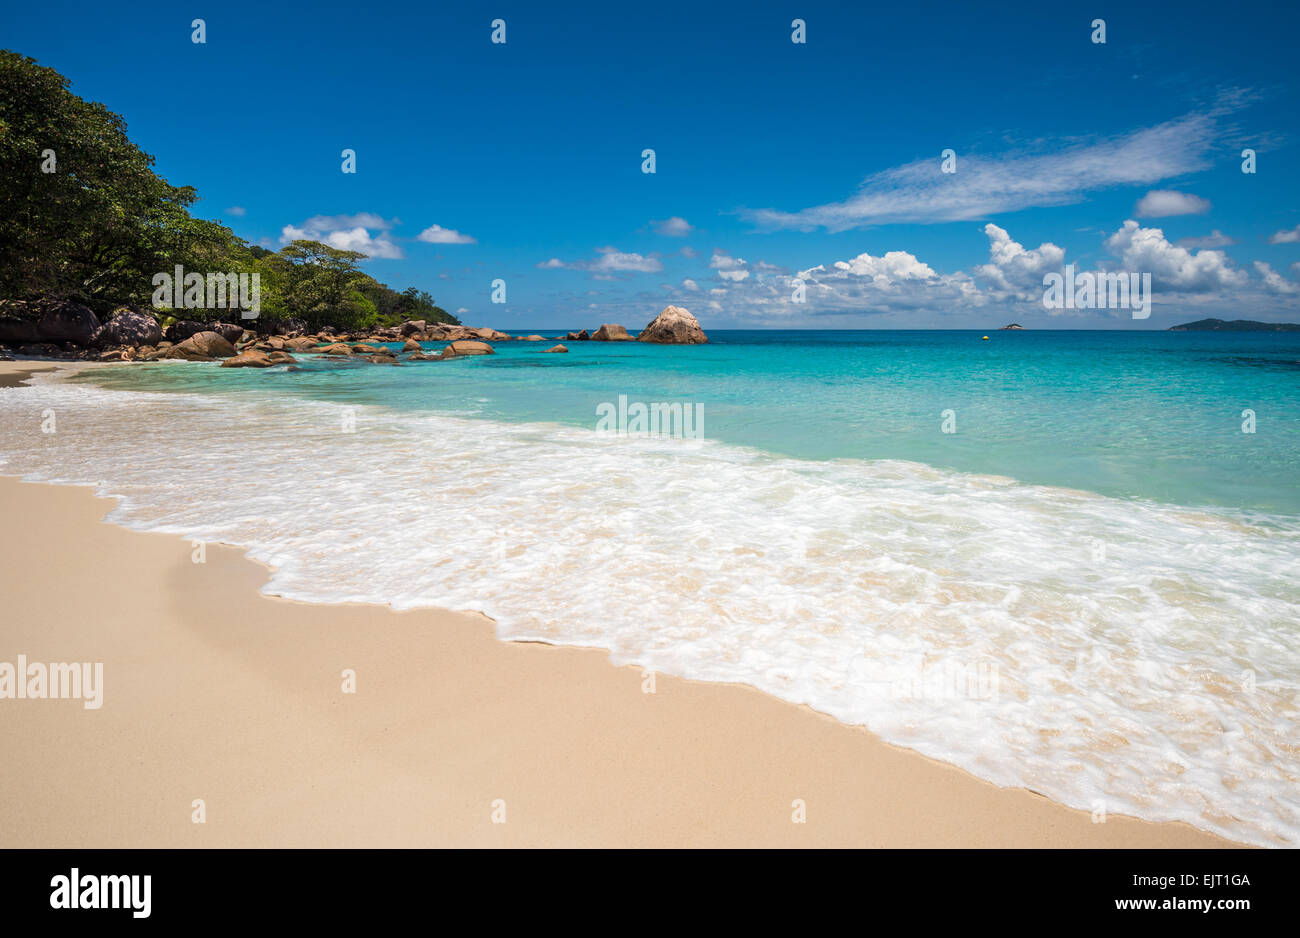 Plage de l'île tropicale, Anse Lazio Praslin, Seychelles Banque D'Images